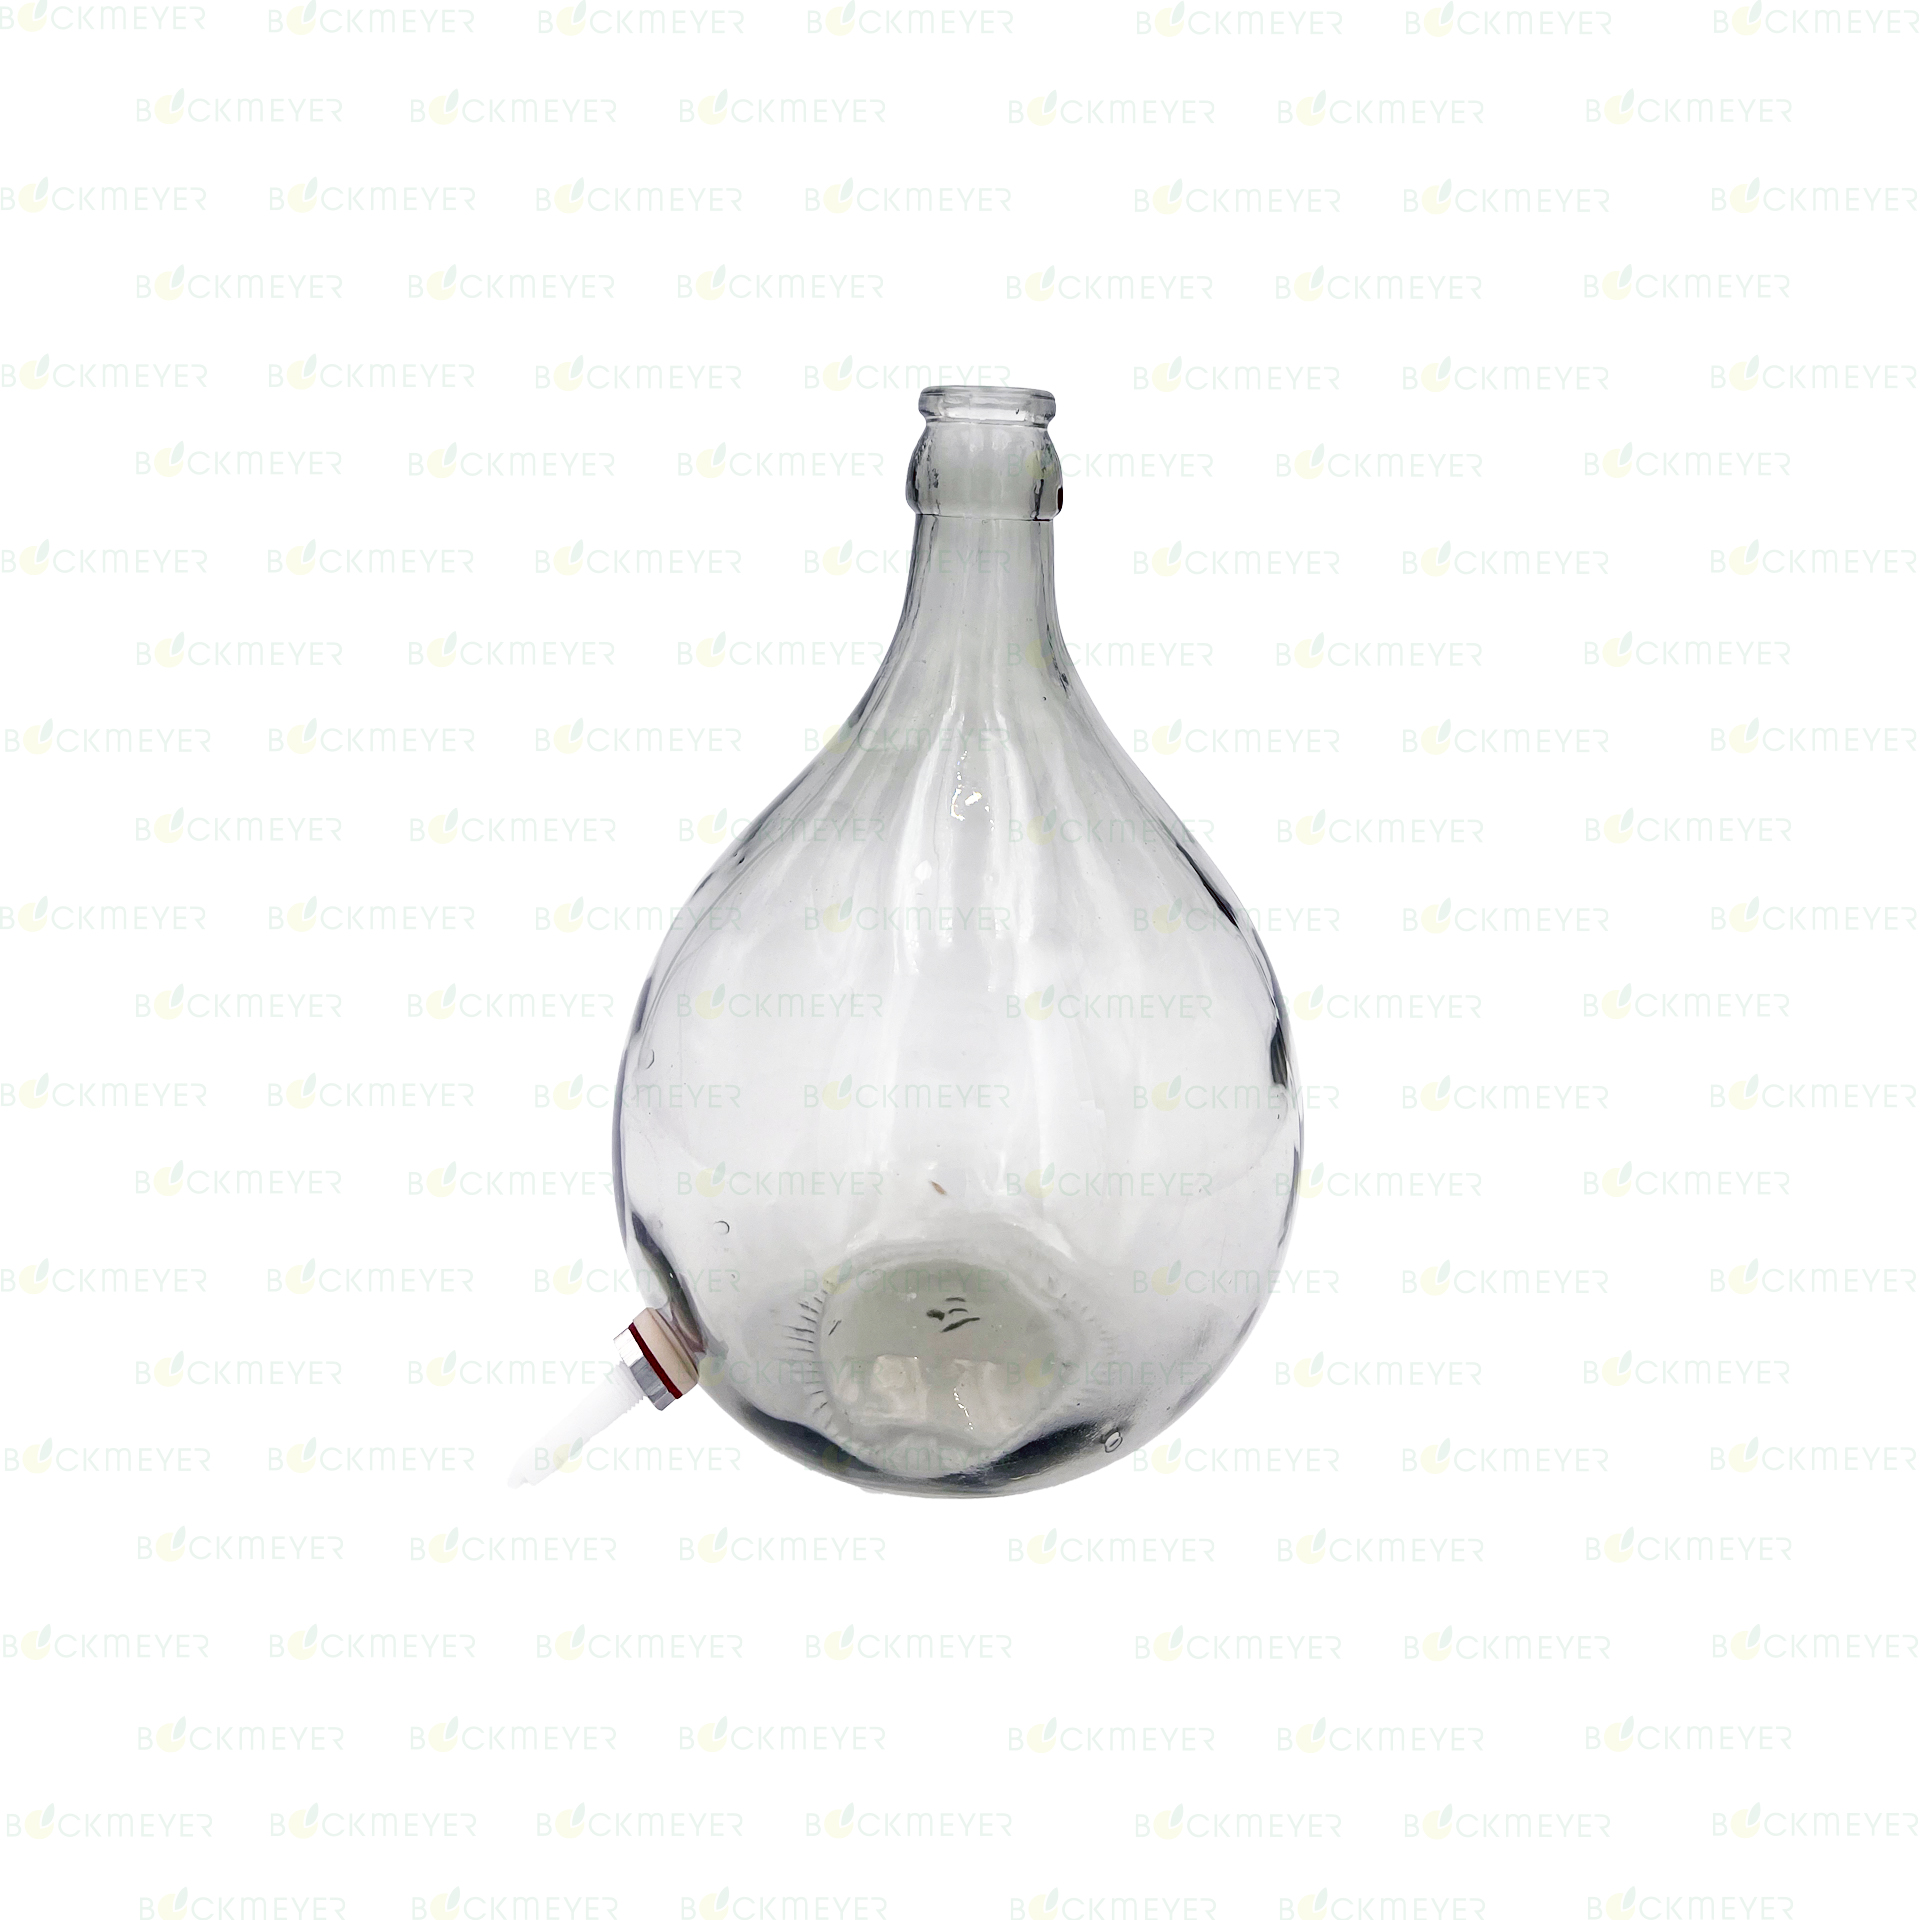 Glasballon 15,0 Liter, weiß, mit Kunststoff-Ablaß (OHNE VERSCHLUSS)